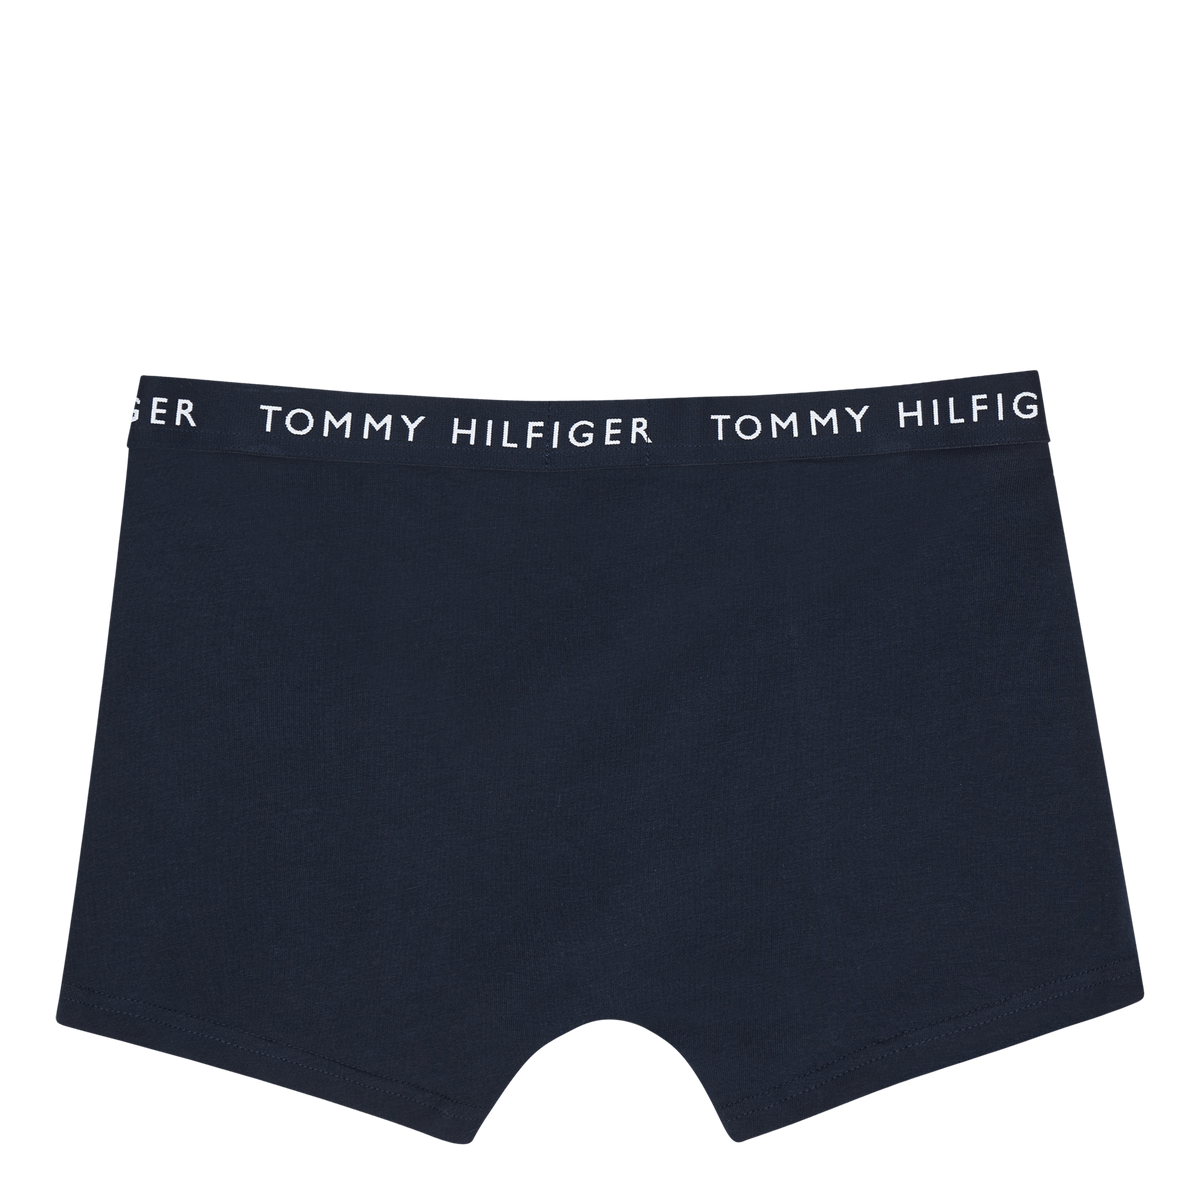 Tommy Hilfiger 3p Trunk 0sf Desert Sky/desert Sky/dese